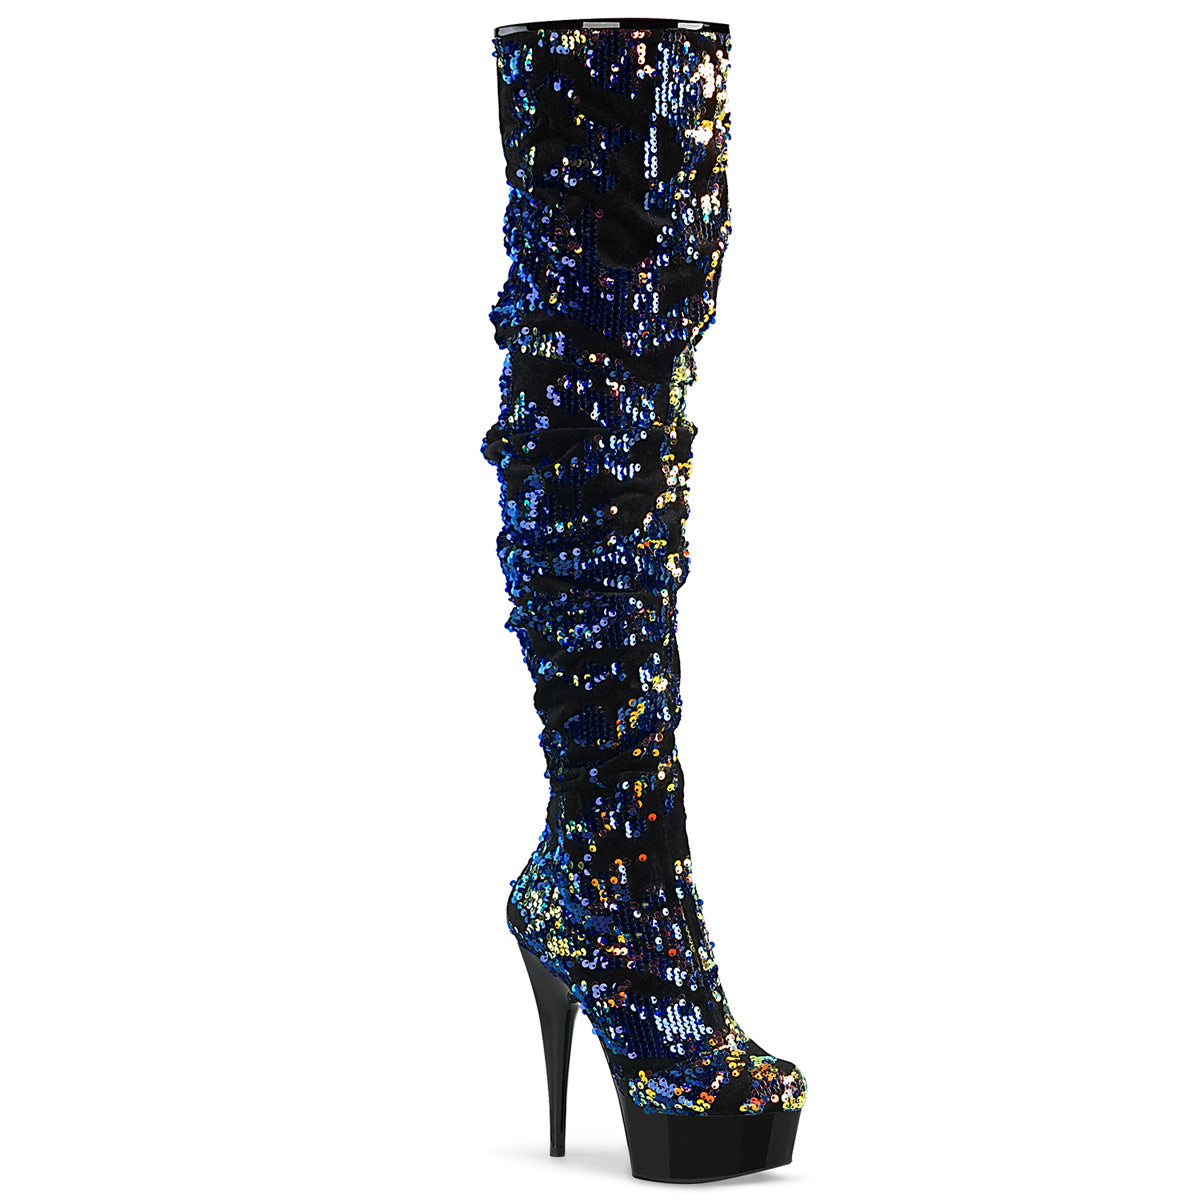 DELIGHT-3004 6" Heel Blue Iridescent Sequins Exotic Dancing Shoes